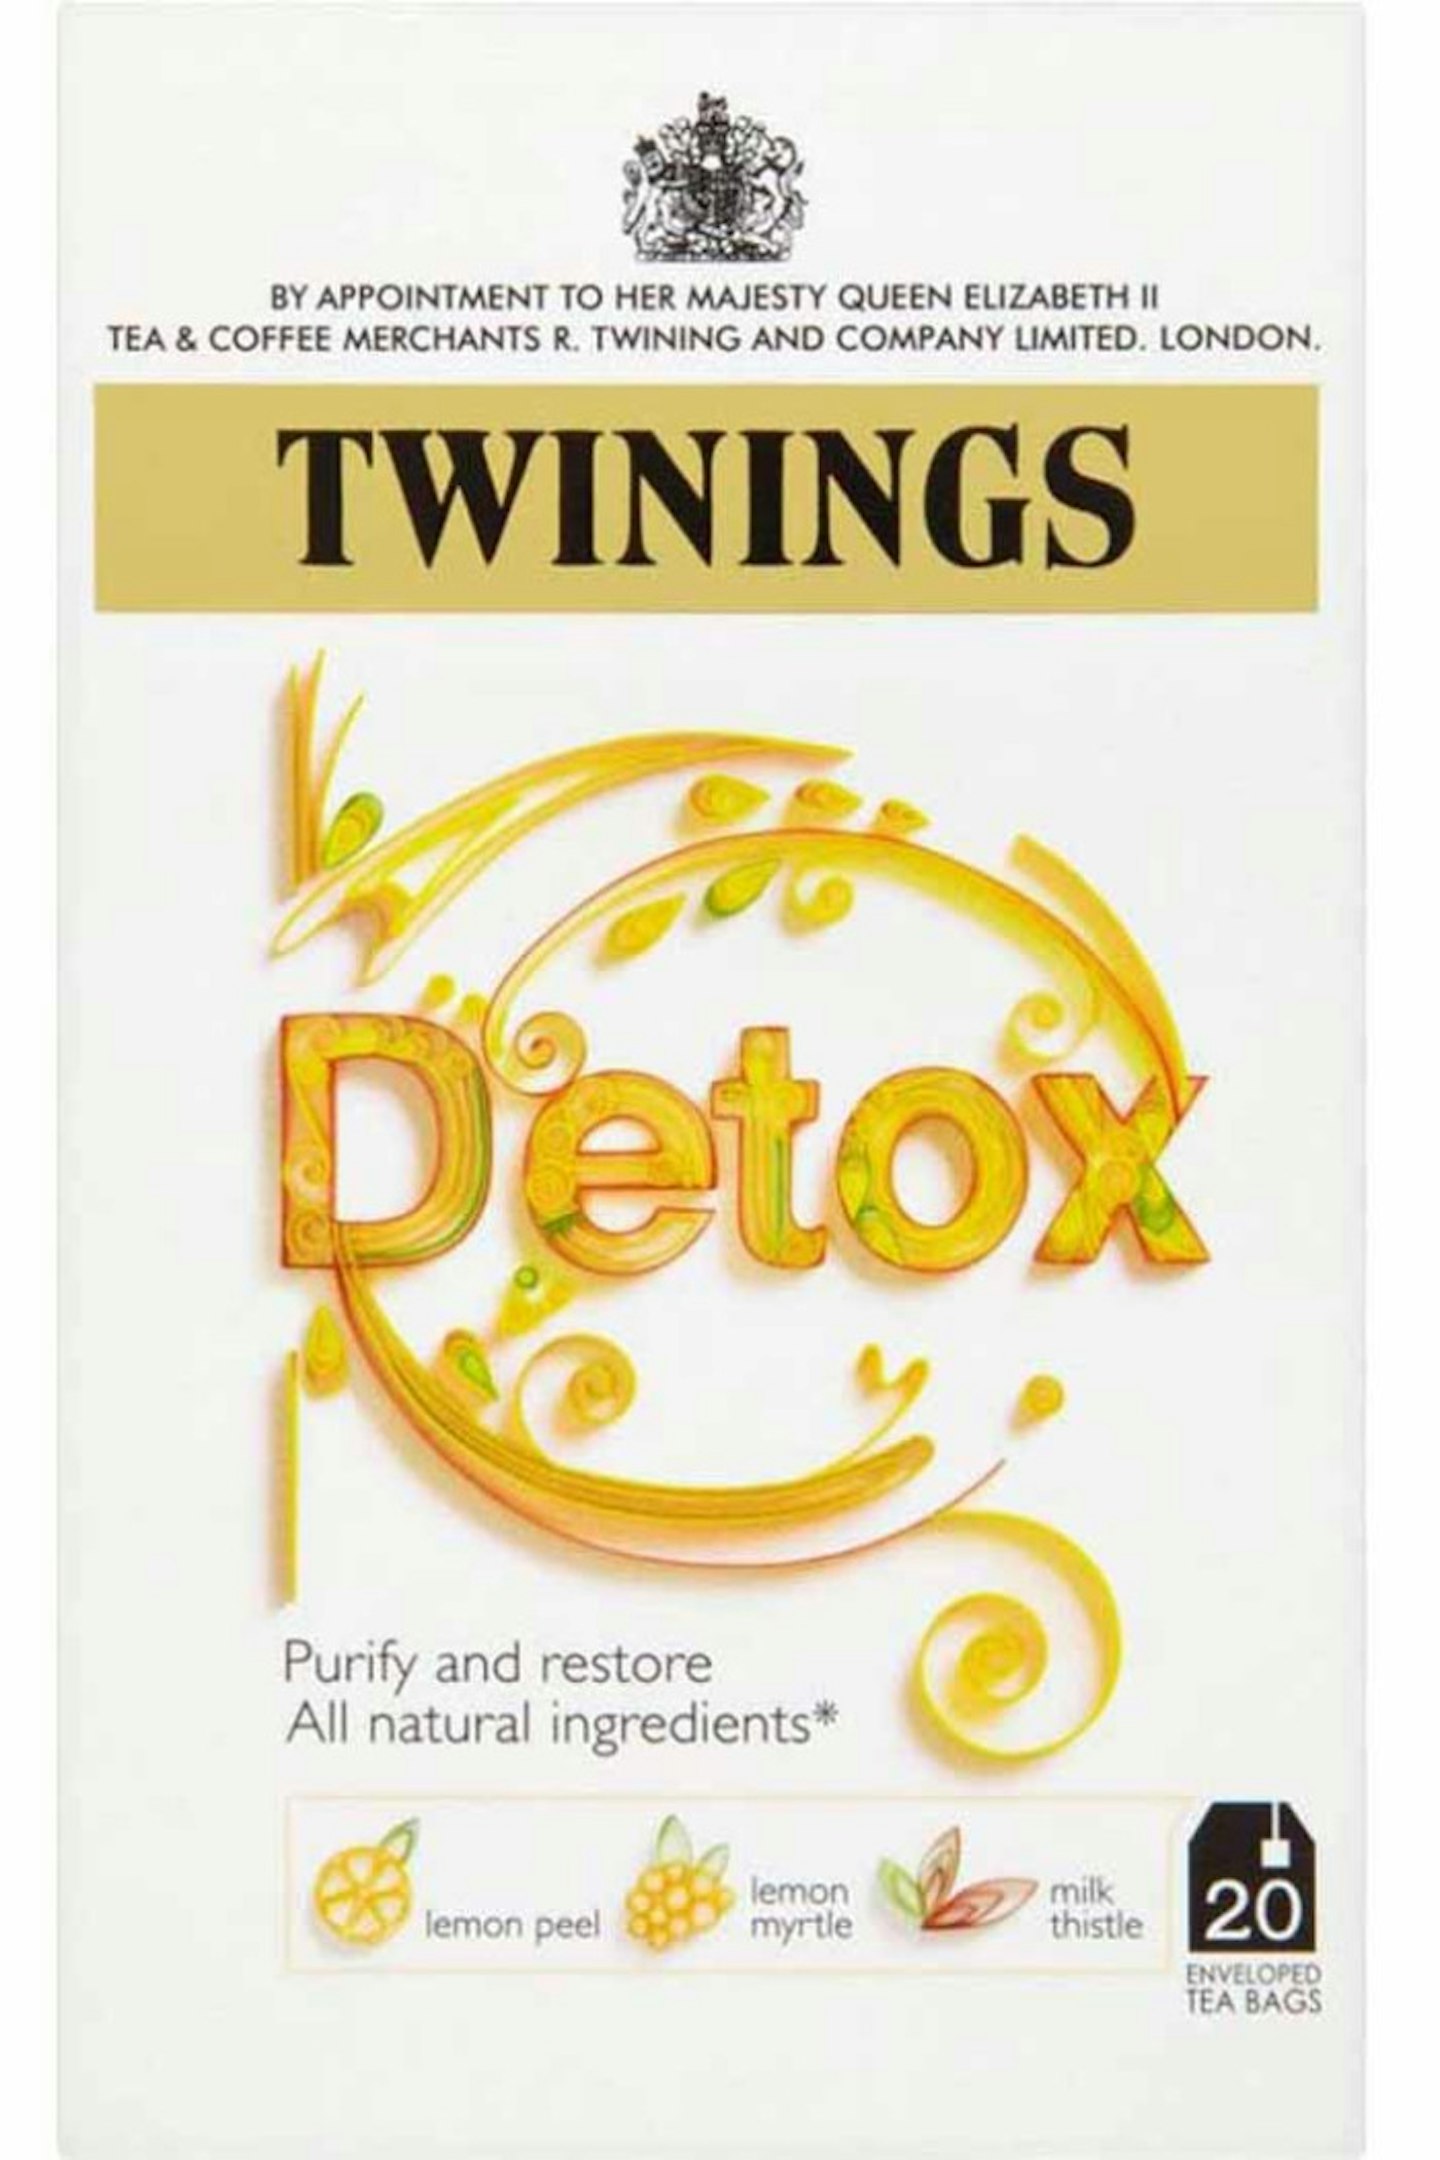 detox tea diet kendall jenner 2